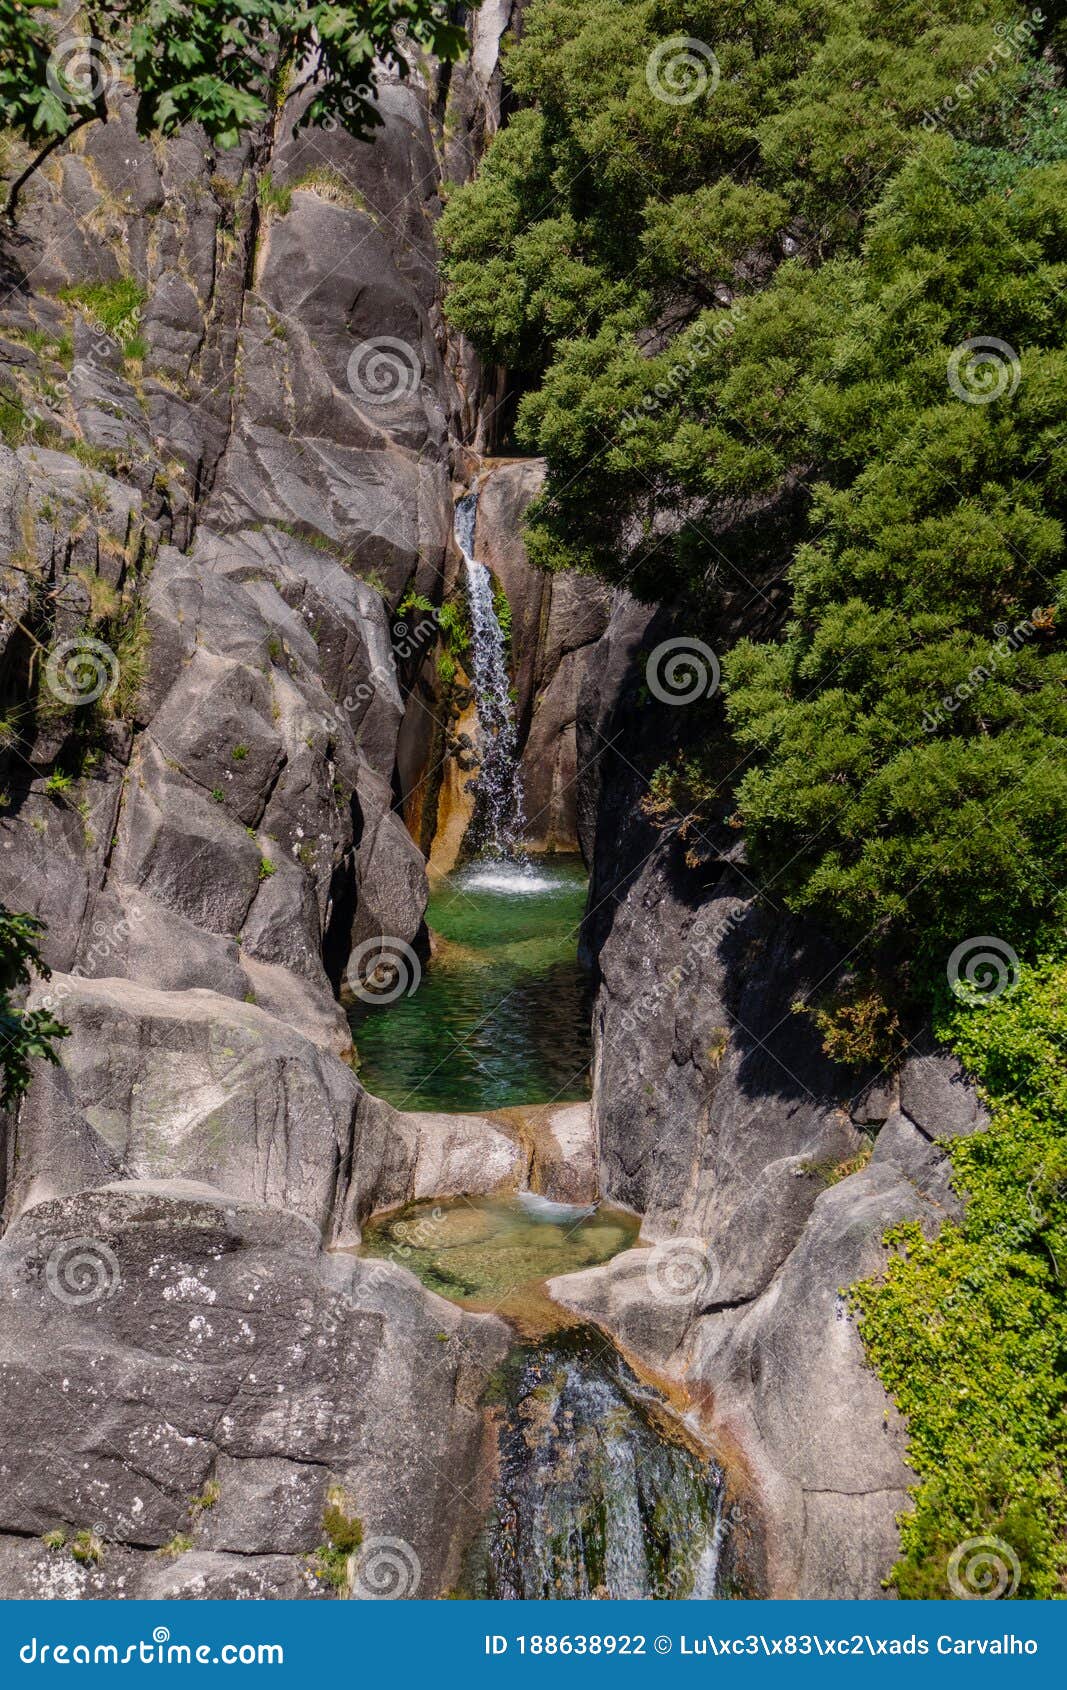 arado waterfall, in gerÃÂªs, during the spring